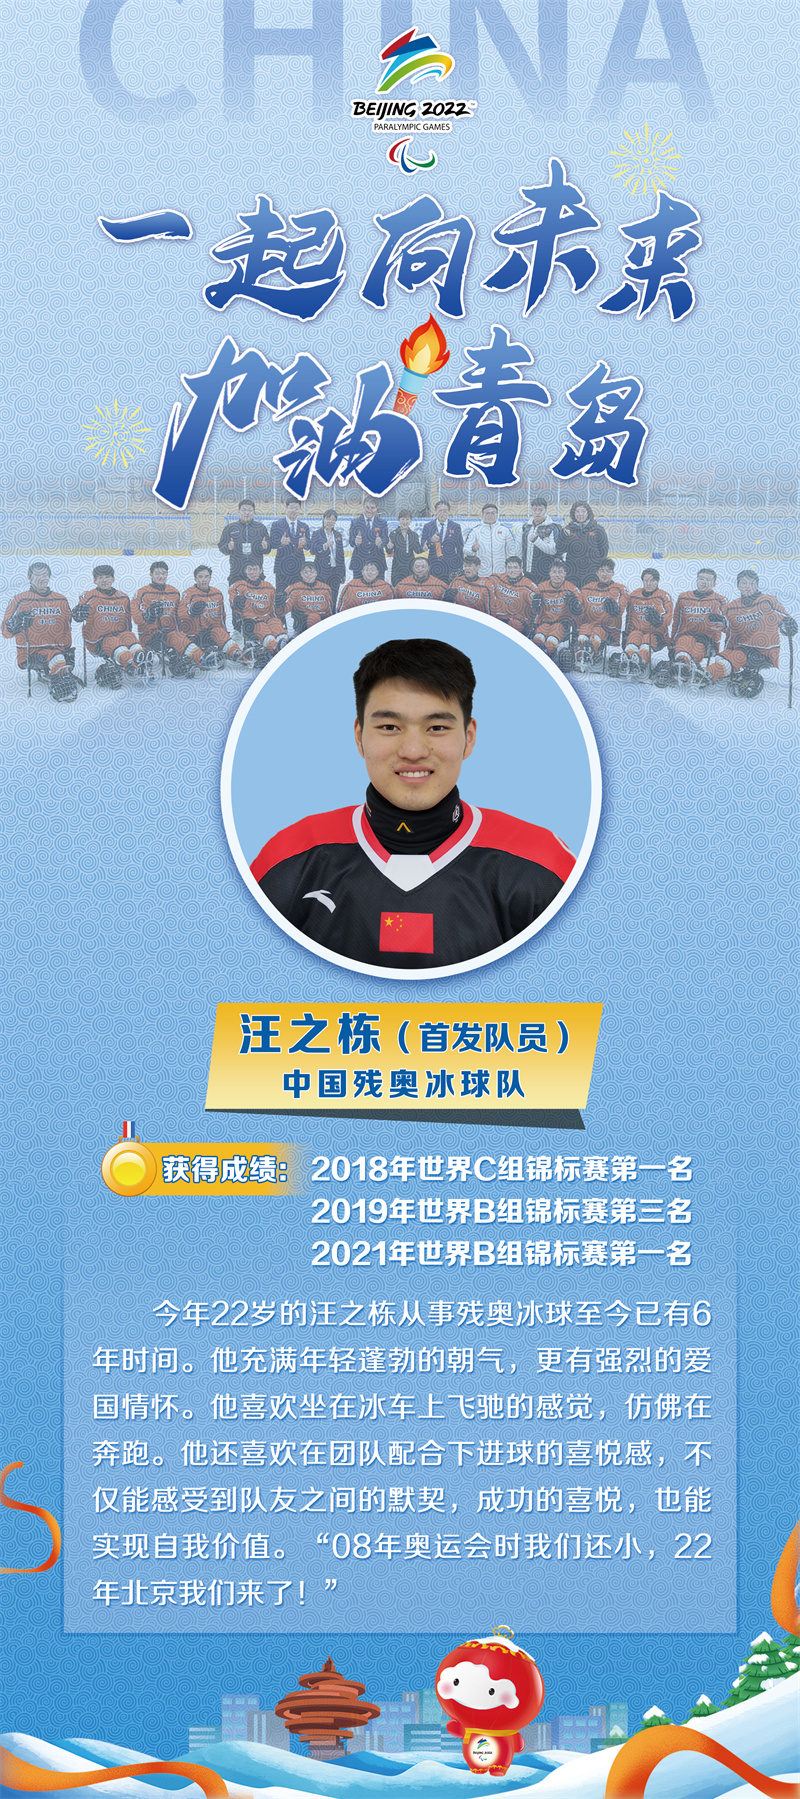 真牛！这位青岛小伙将担任北京冬残奥会开幕式中国体育代表团旗手  第2张